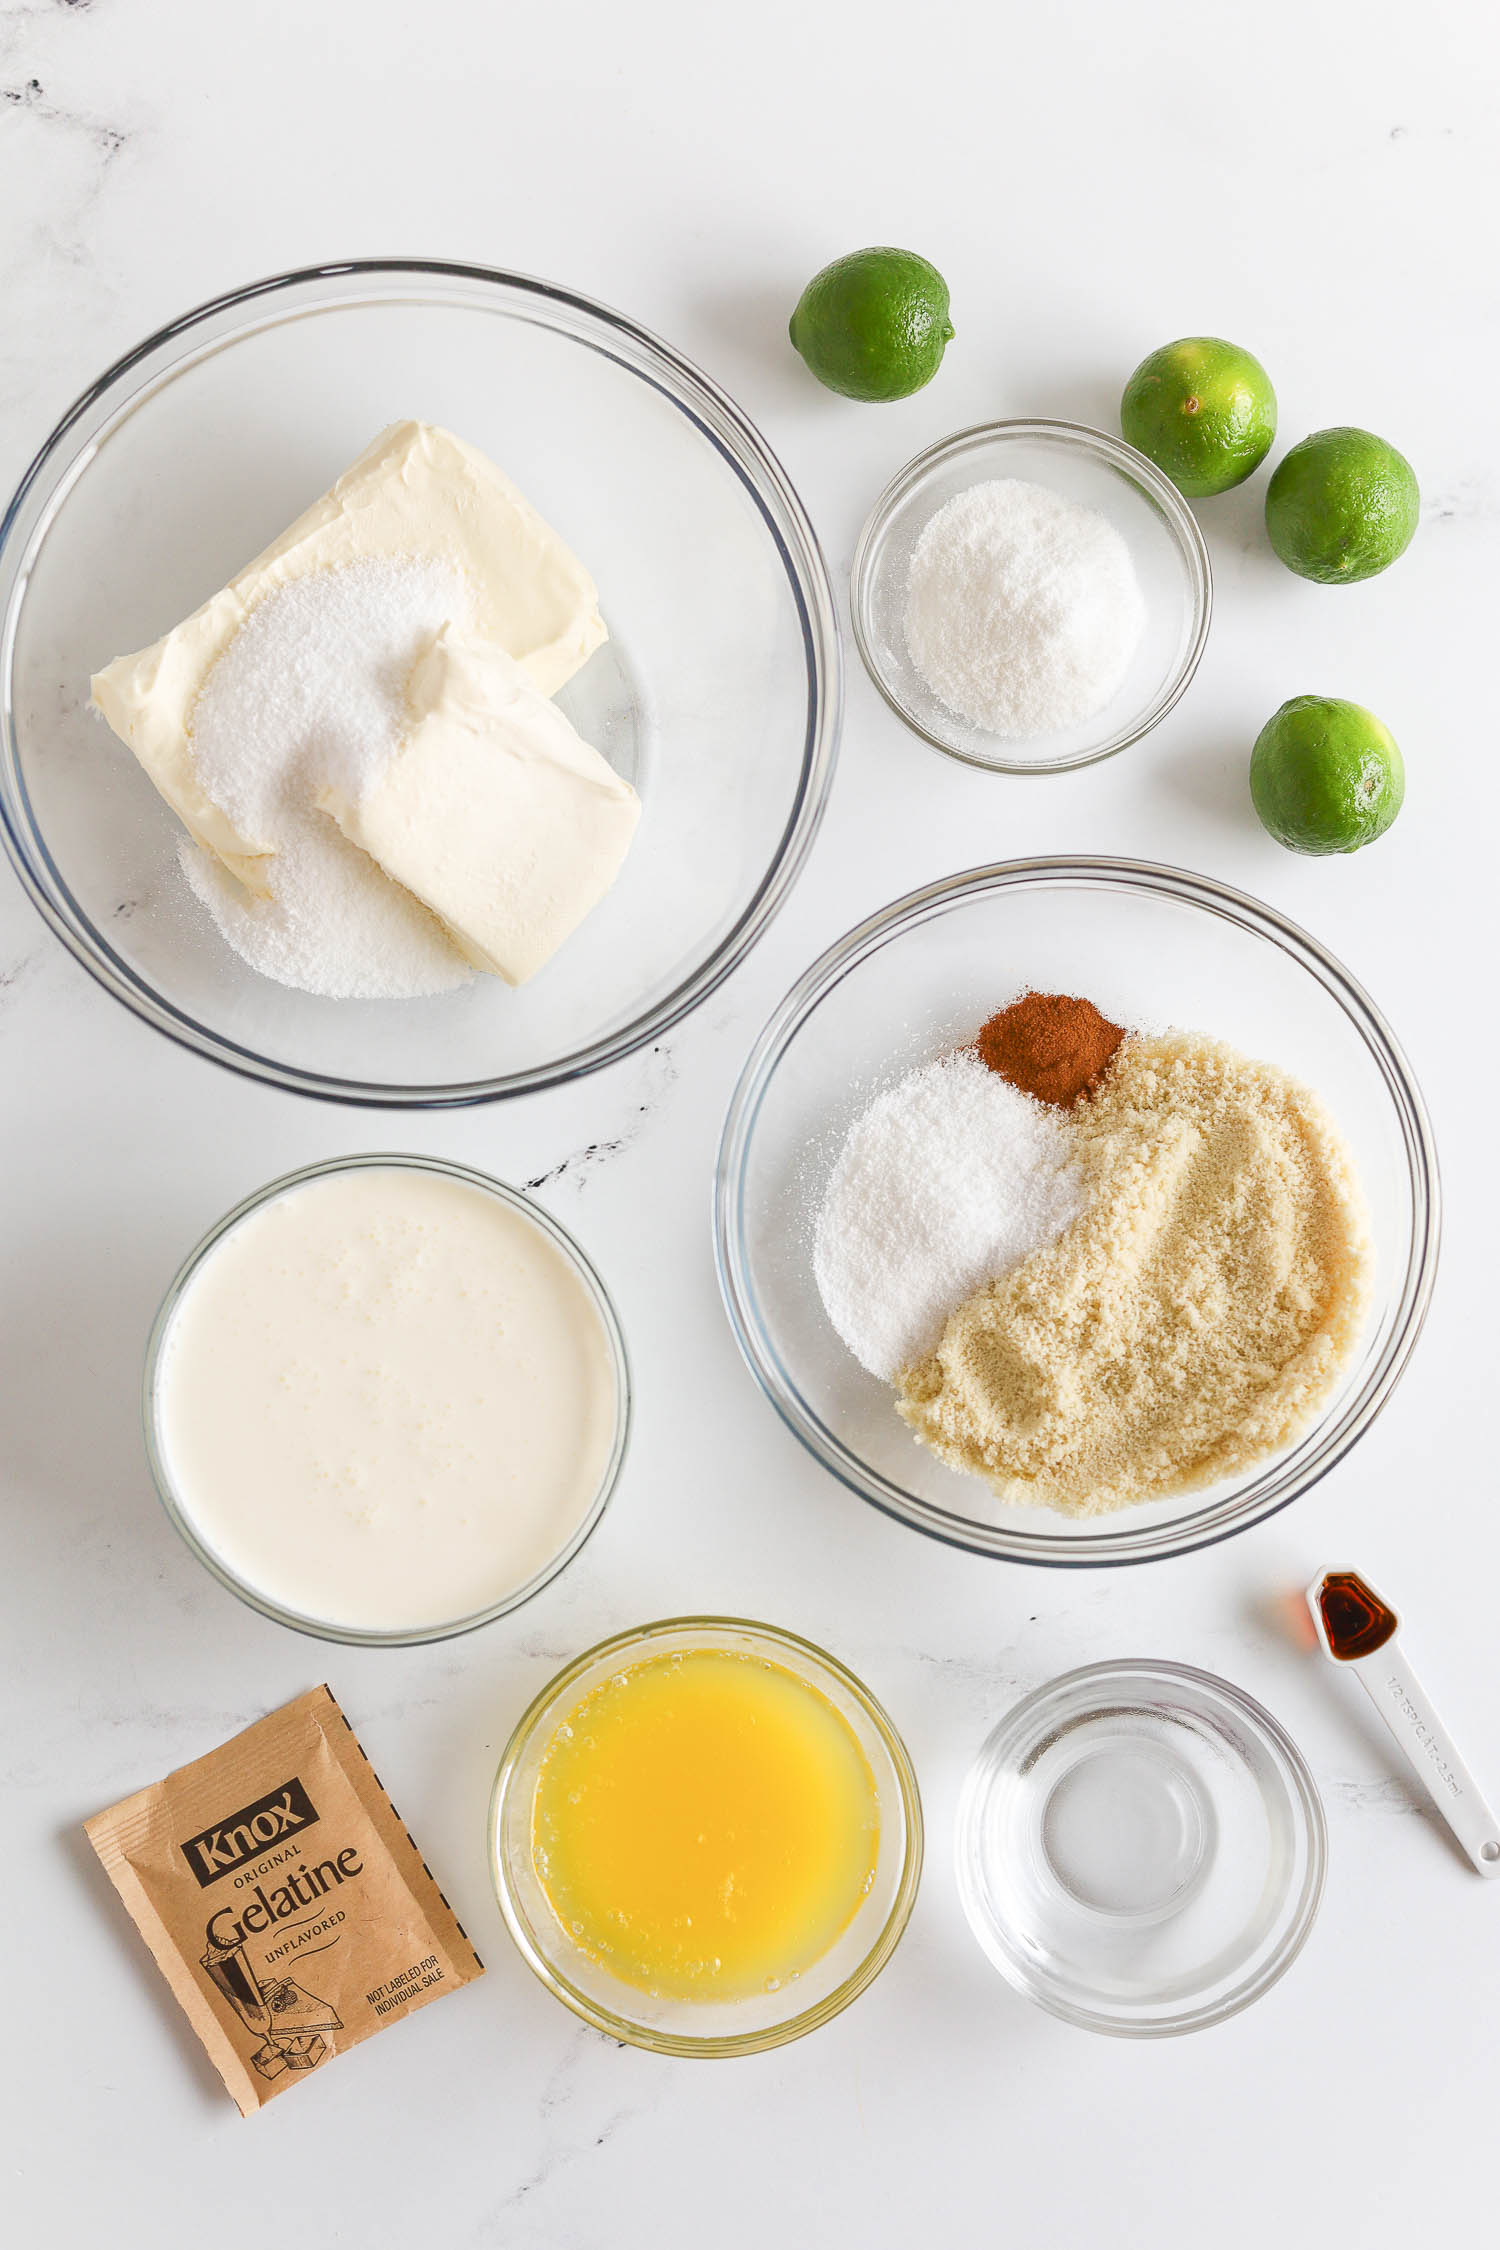 ingredients needed to make key lime cheesecake jars